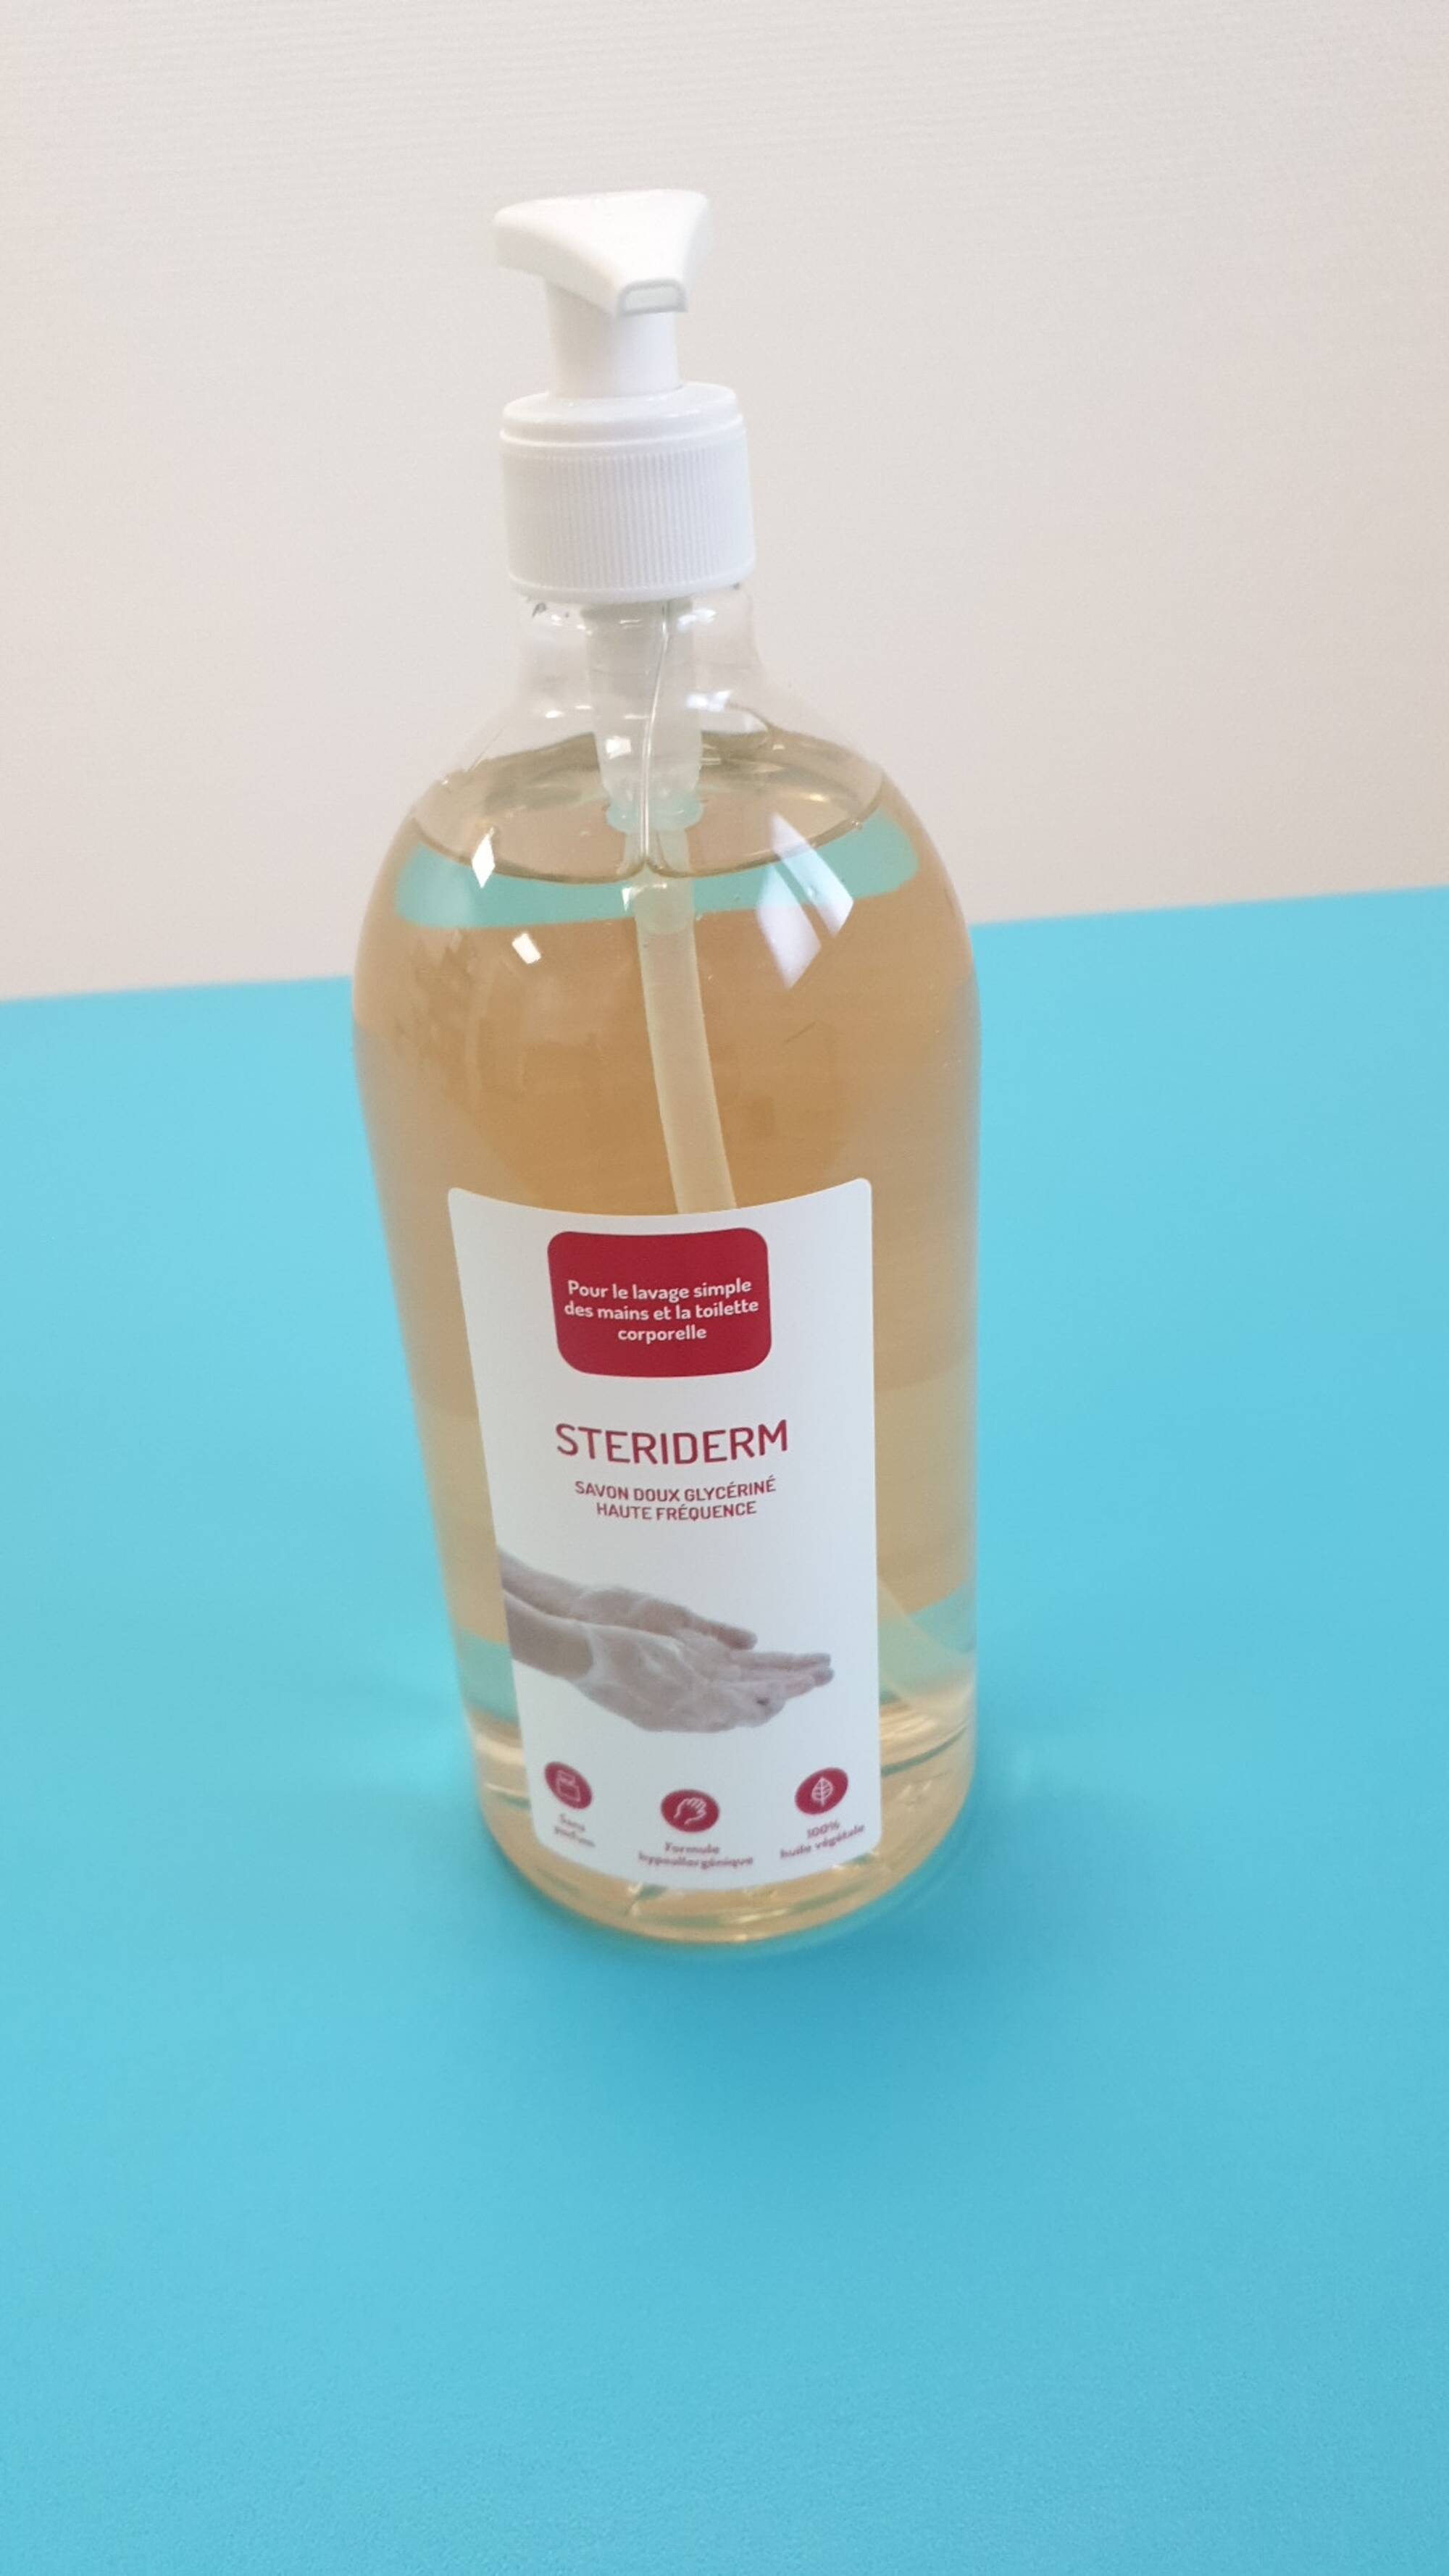 STERIDIS - Steriderm - savon doux glycériné haute fréquence